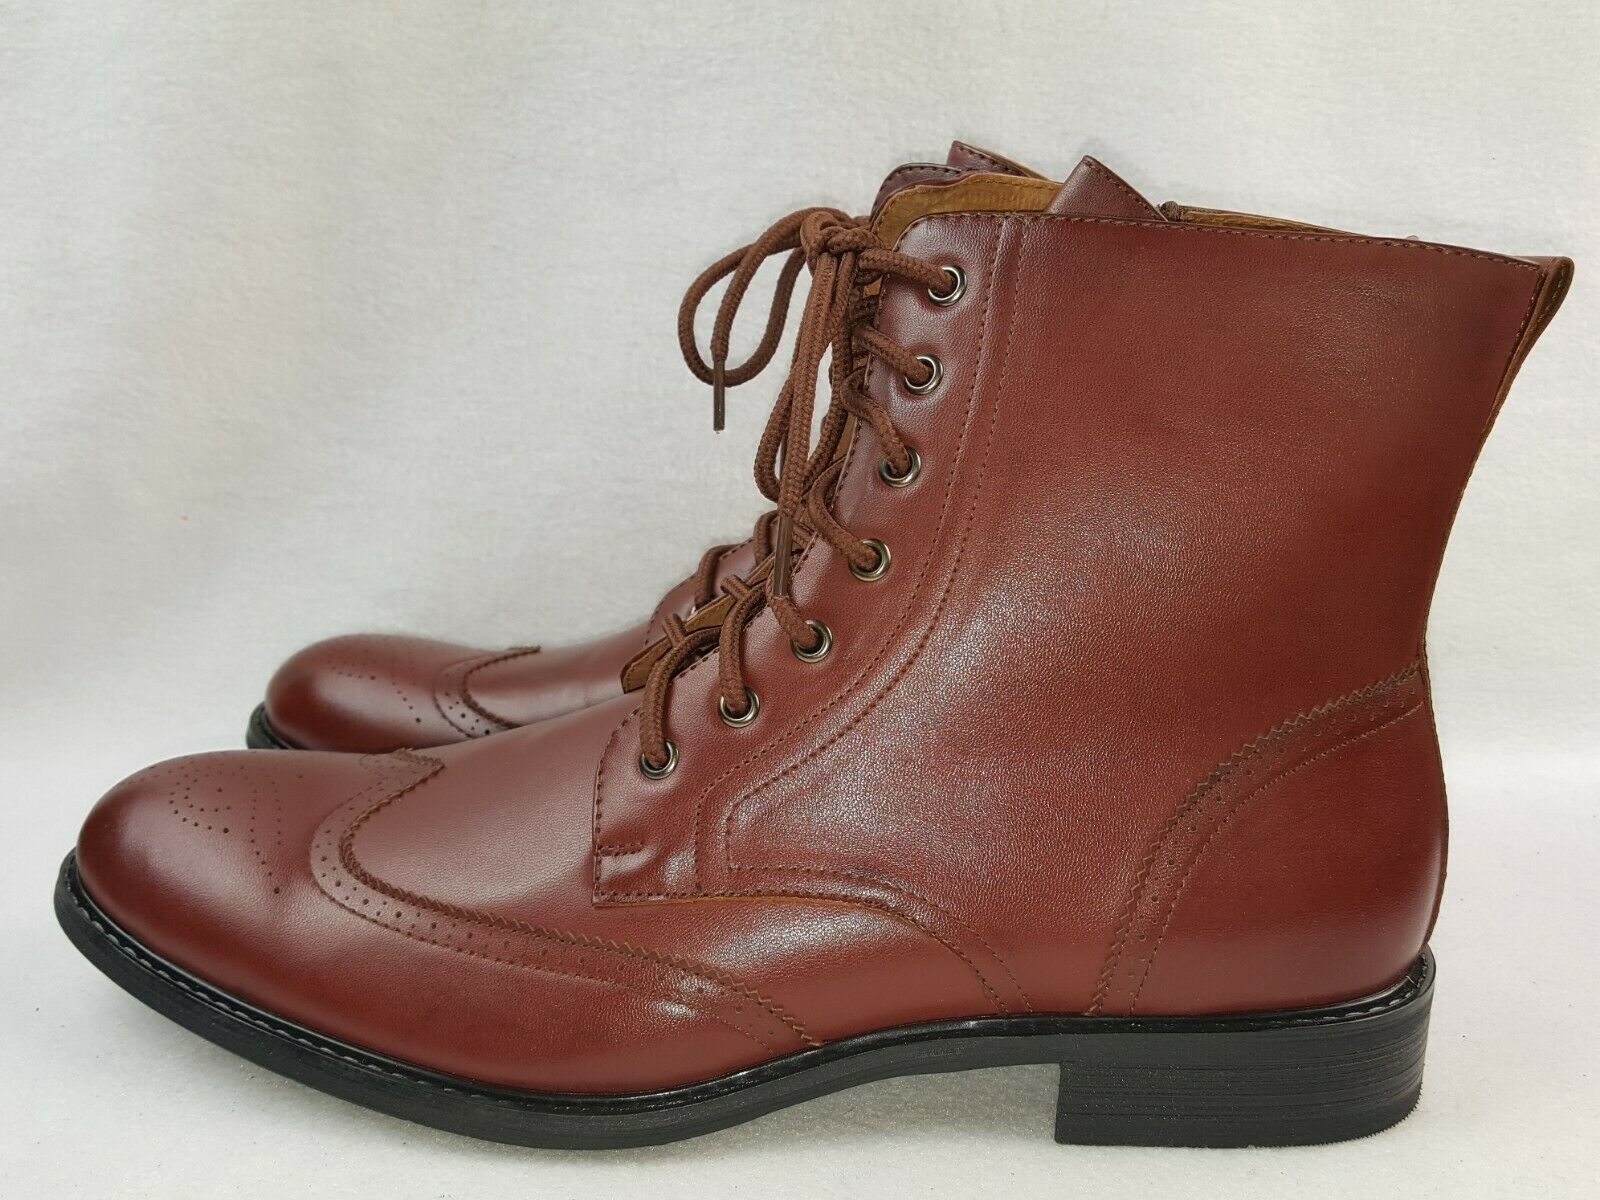 Delli Aldo "Ken M-828" Men's Stylish Ankle Dress Boots Size 11 & 13